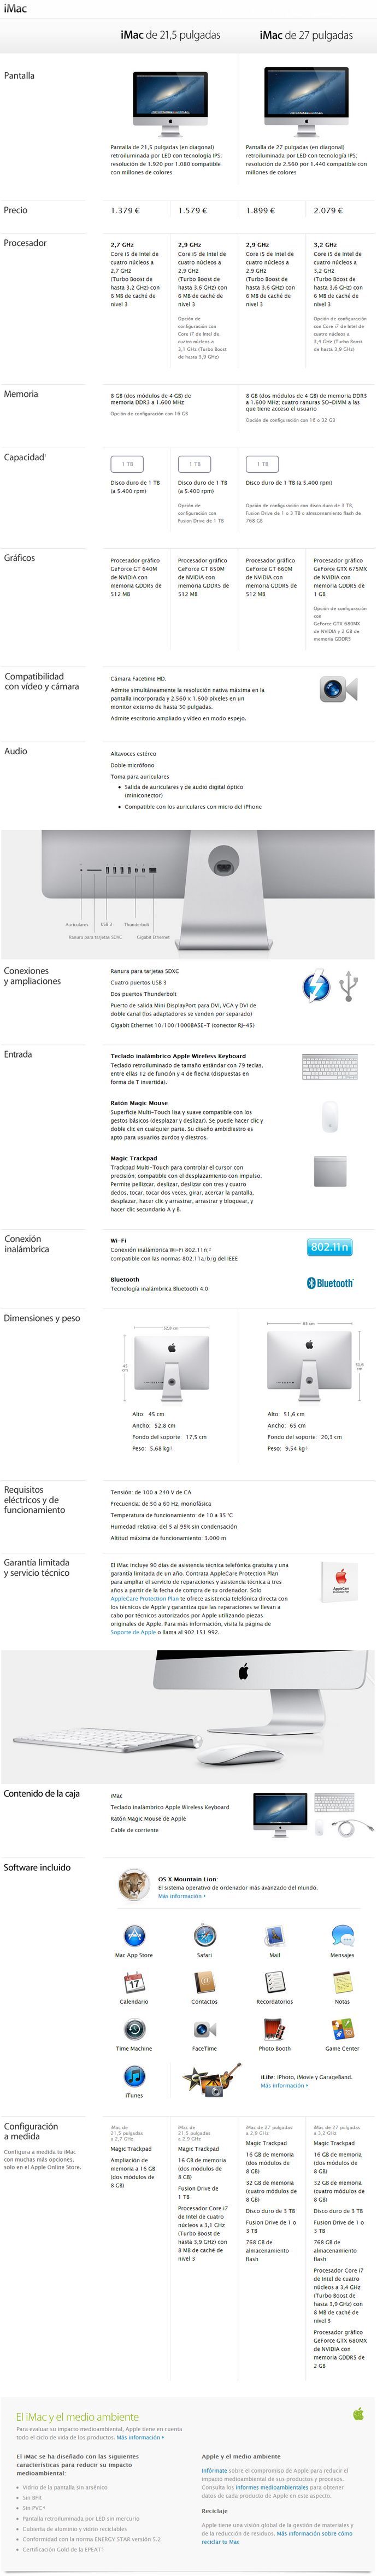 Apple anuncia la Nueva iMac en 21.5" y 27" - Especificaciones técnicas completas 2